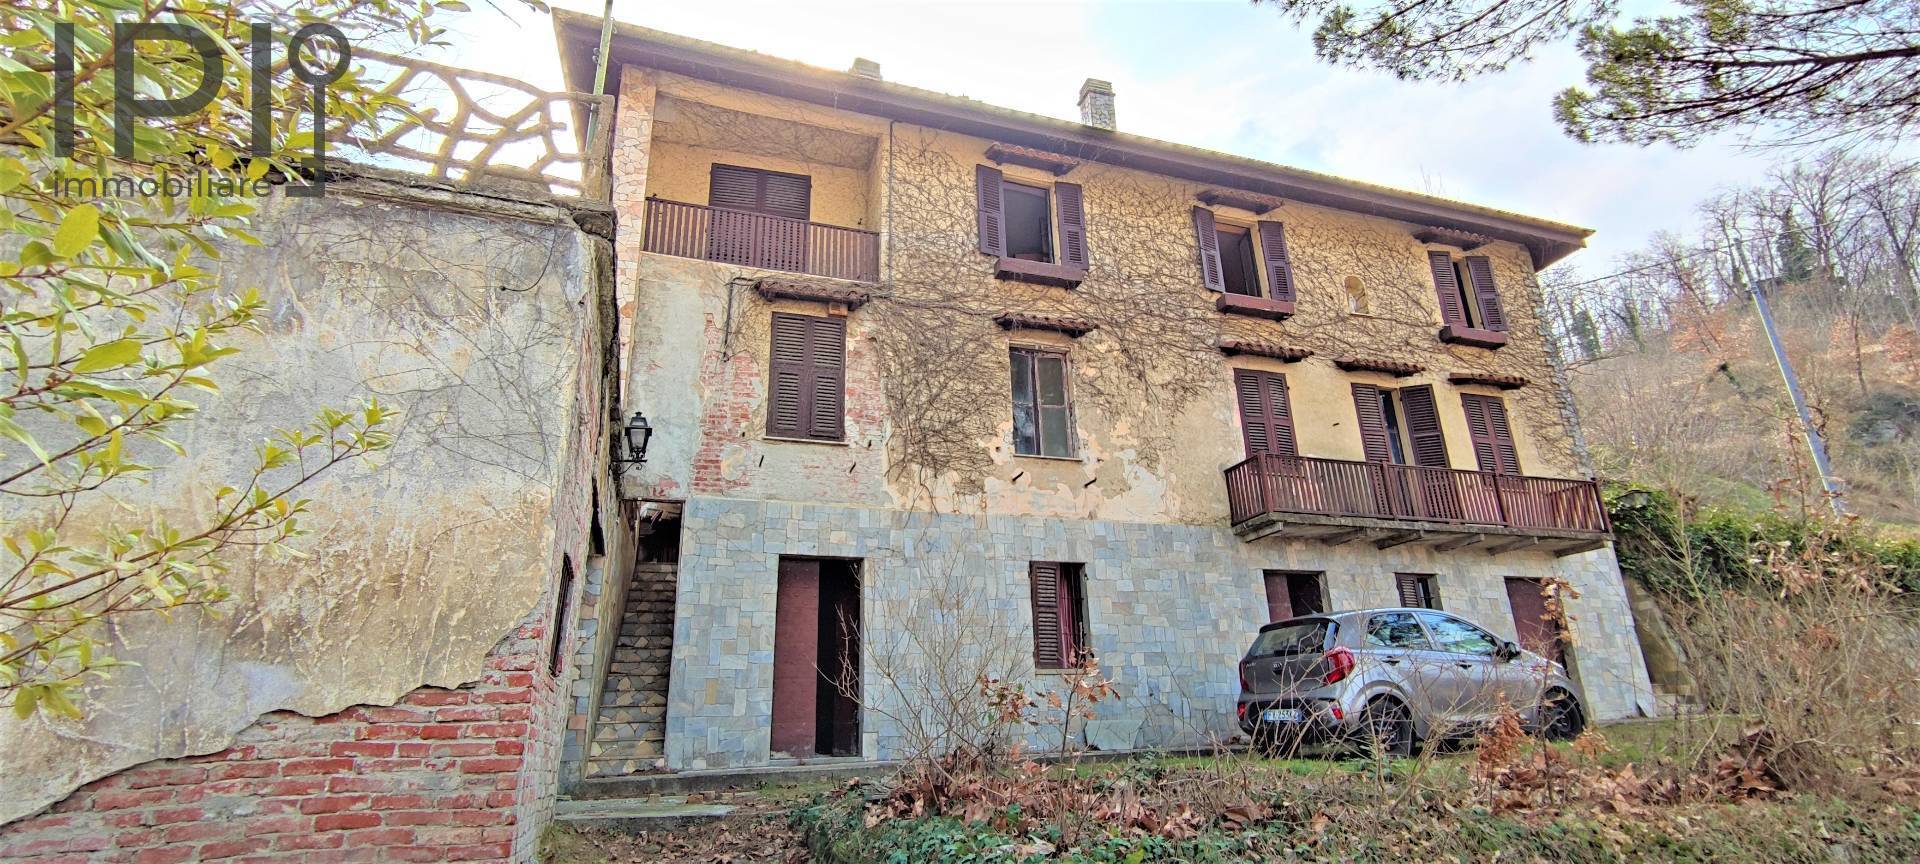 Soluzione Indipendente in vendita a Spigno Monferrato, 13 locali, prezzo € 180.000 | PortaleAgenzieImmobiliari.it